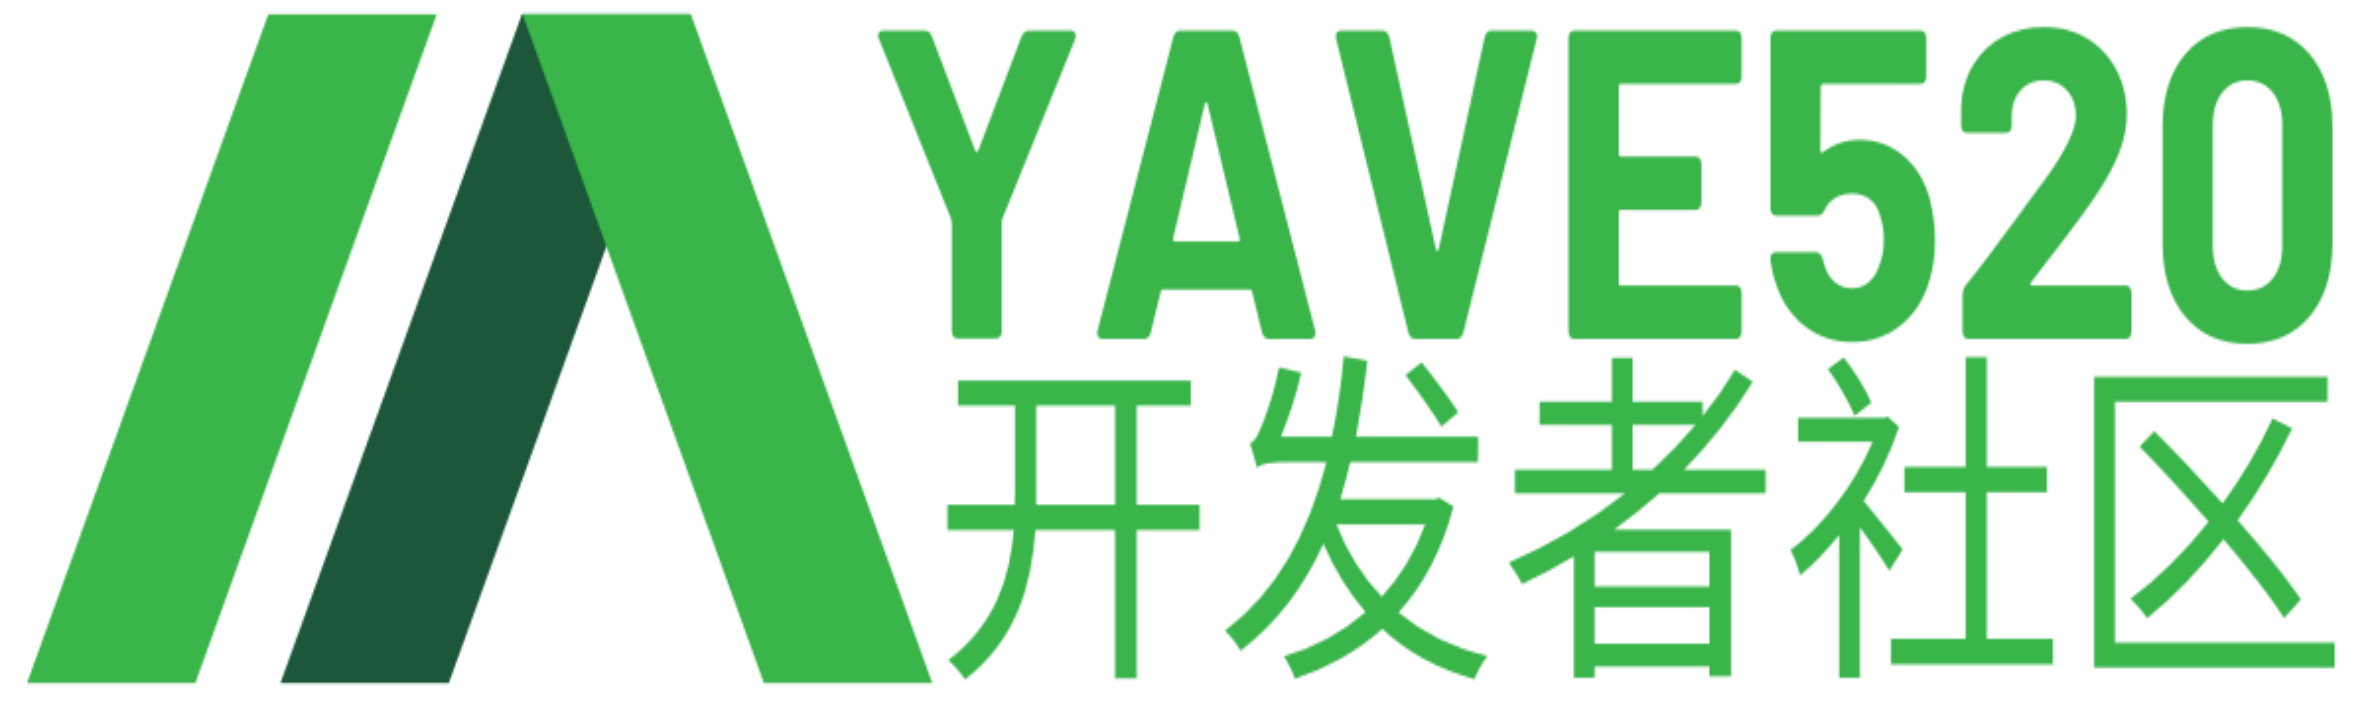 发布文章-Yave520-专业开发者社区